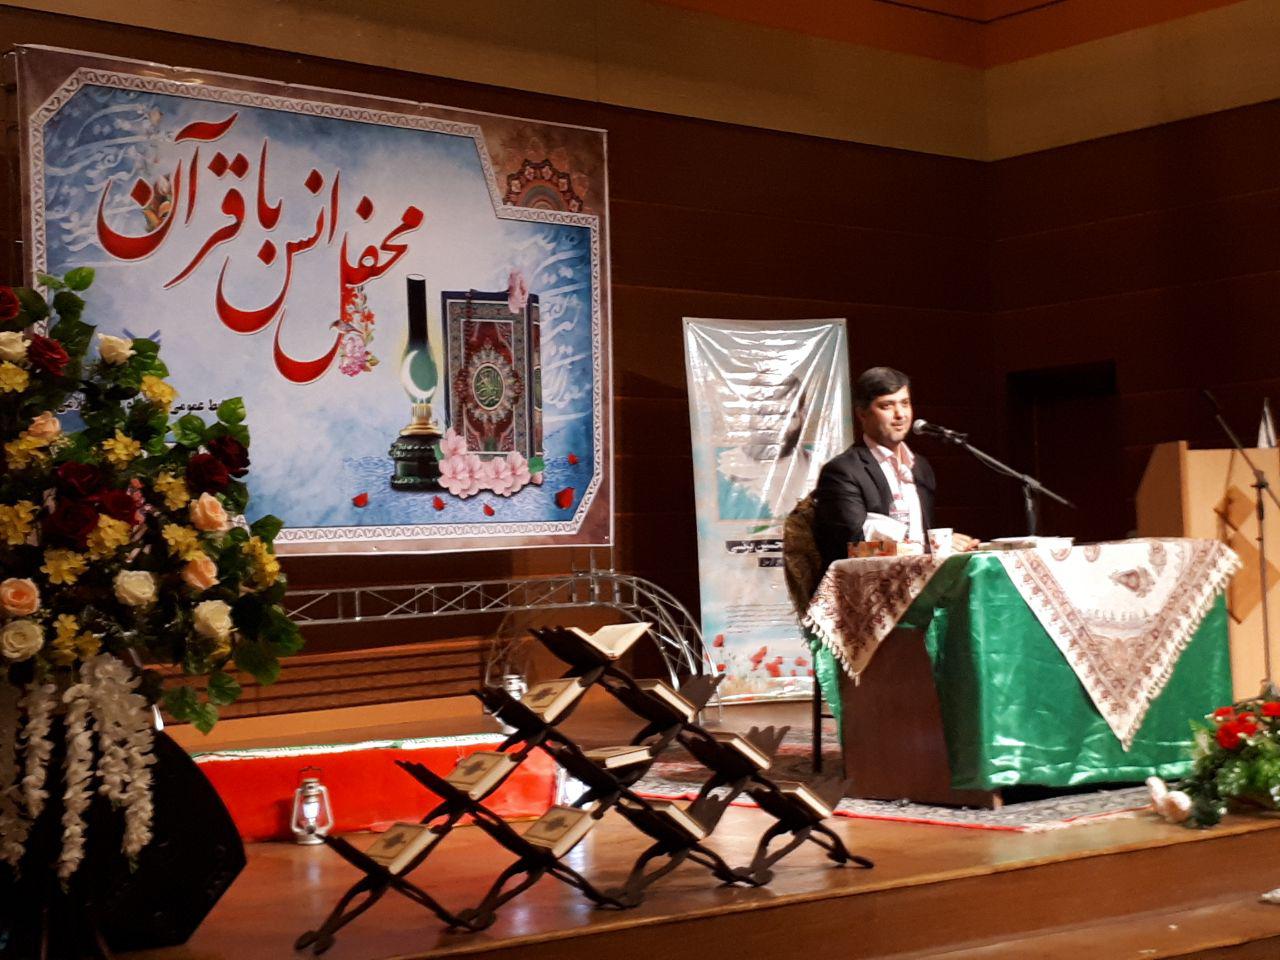 برگزاری محفل انس با قرآن با حضور قاری ممتاز بین المللی جواد فروغی در دانشگاه آزادانار + تصاویر